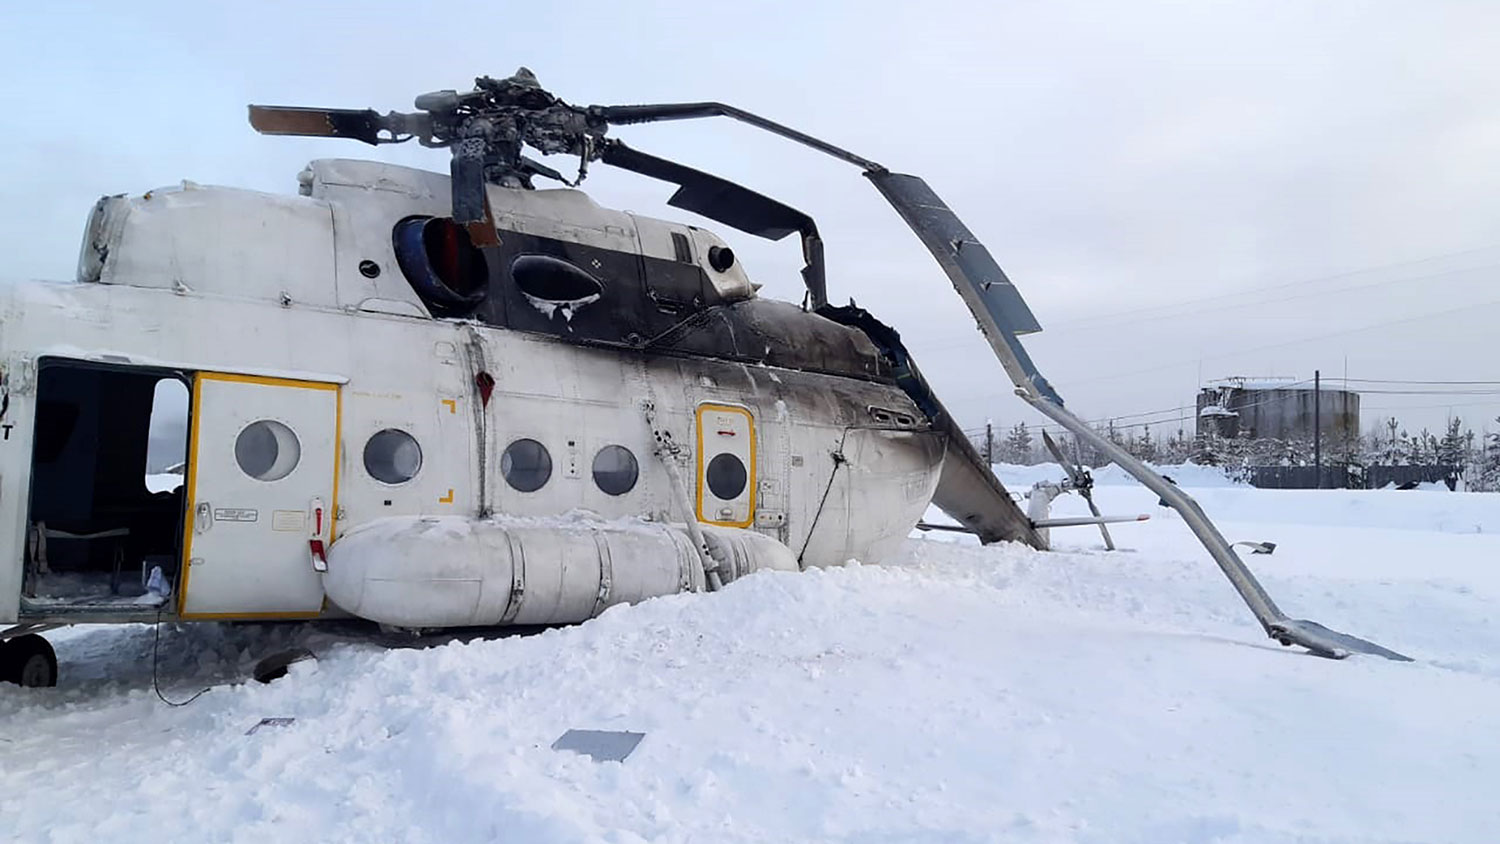 Rơi máy bay ở Cộng hòa Tatarstan (Nga): 1 đại biểu Duma thiệt mạng